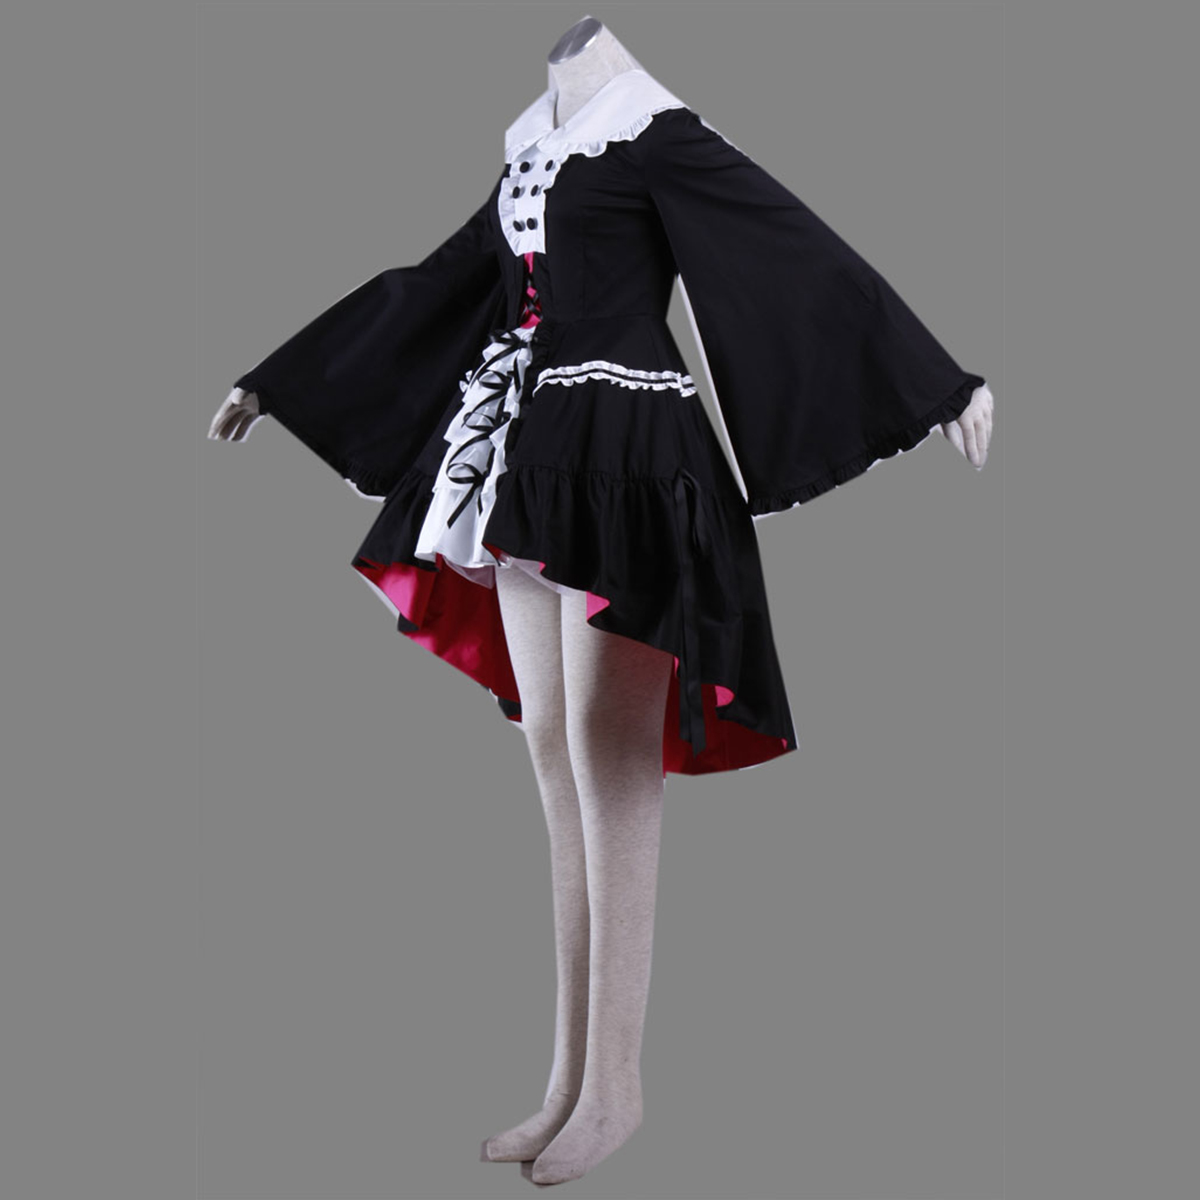 Haruhi Suzumiya Nagato Yuki 2 Lolita Cosplay Costumes New Zealand Online Store